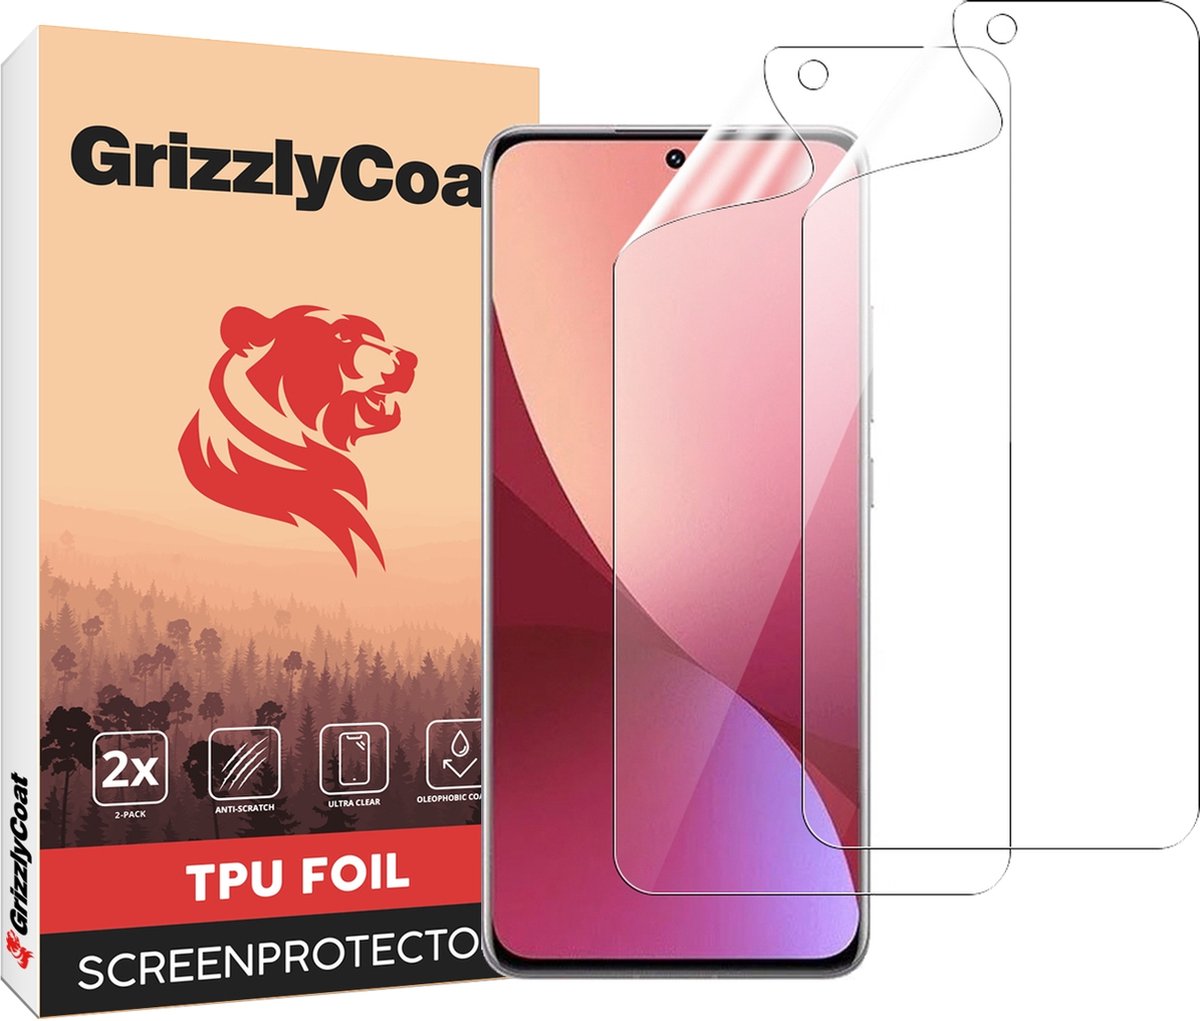 GrizzlyCoat - Screenprotector geschikt voor Xiaomi 12X Hydrogel TPU | GrizzlyCoat Screenprotector - Case Friendly + Installatie Frame (2-Pack)